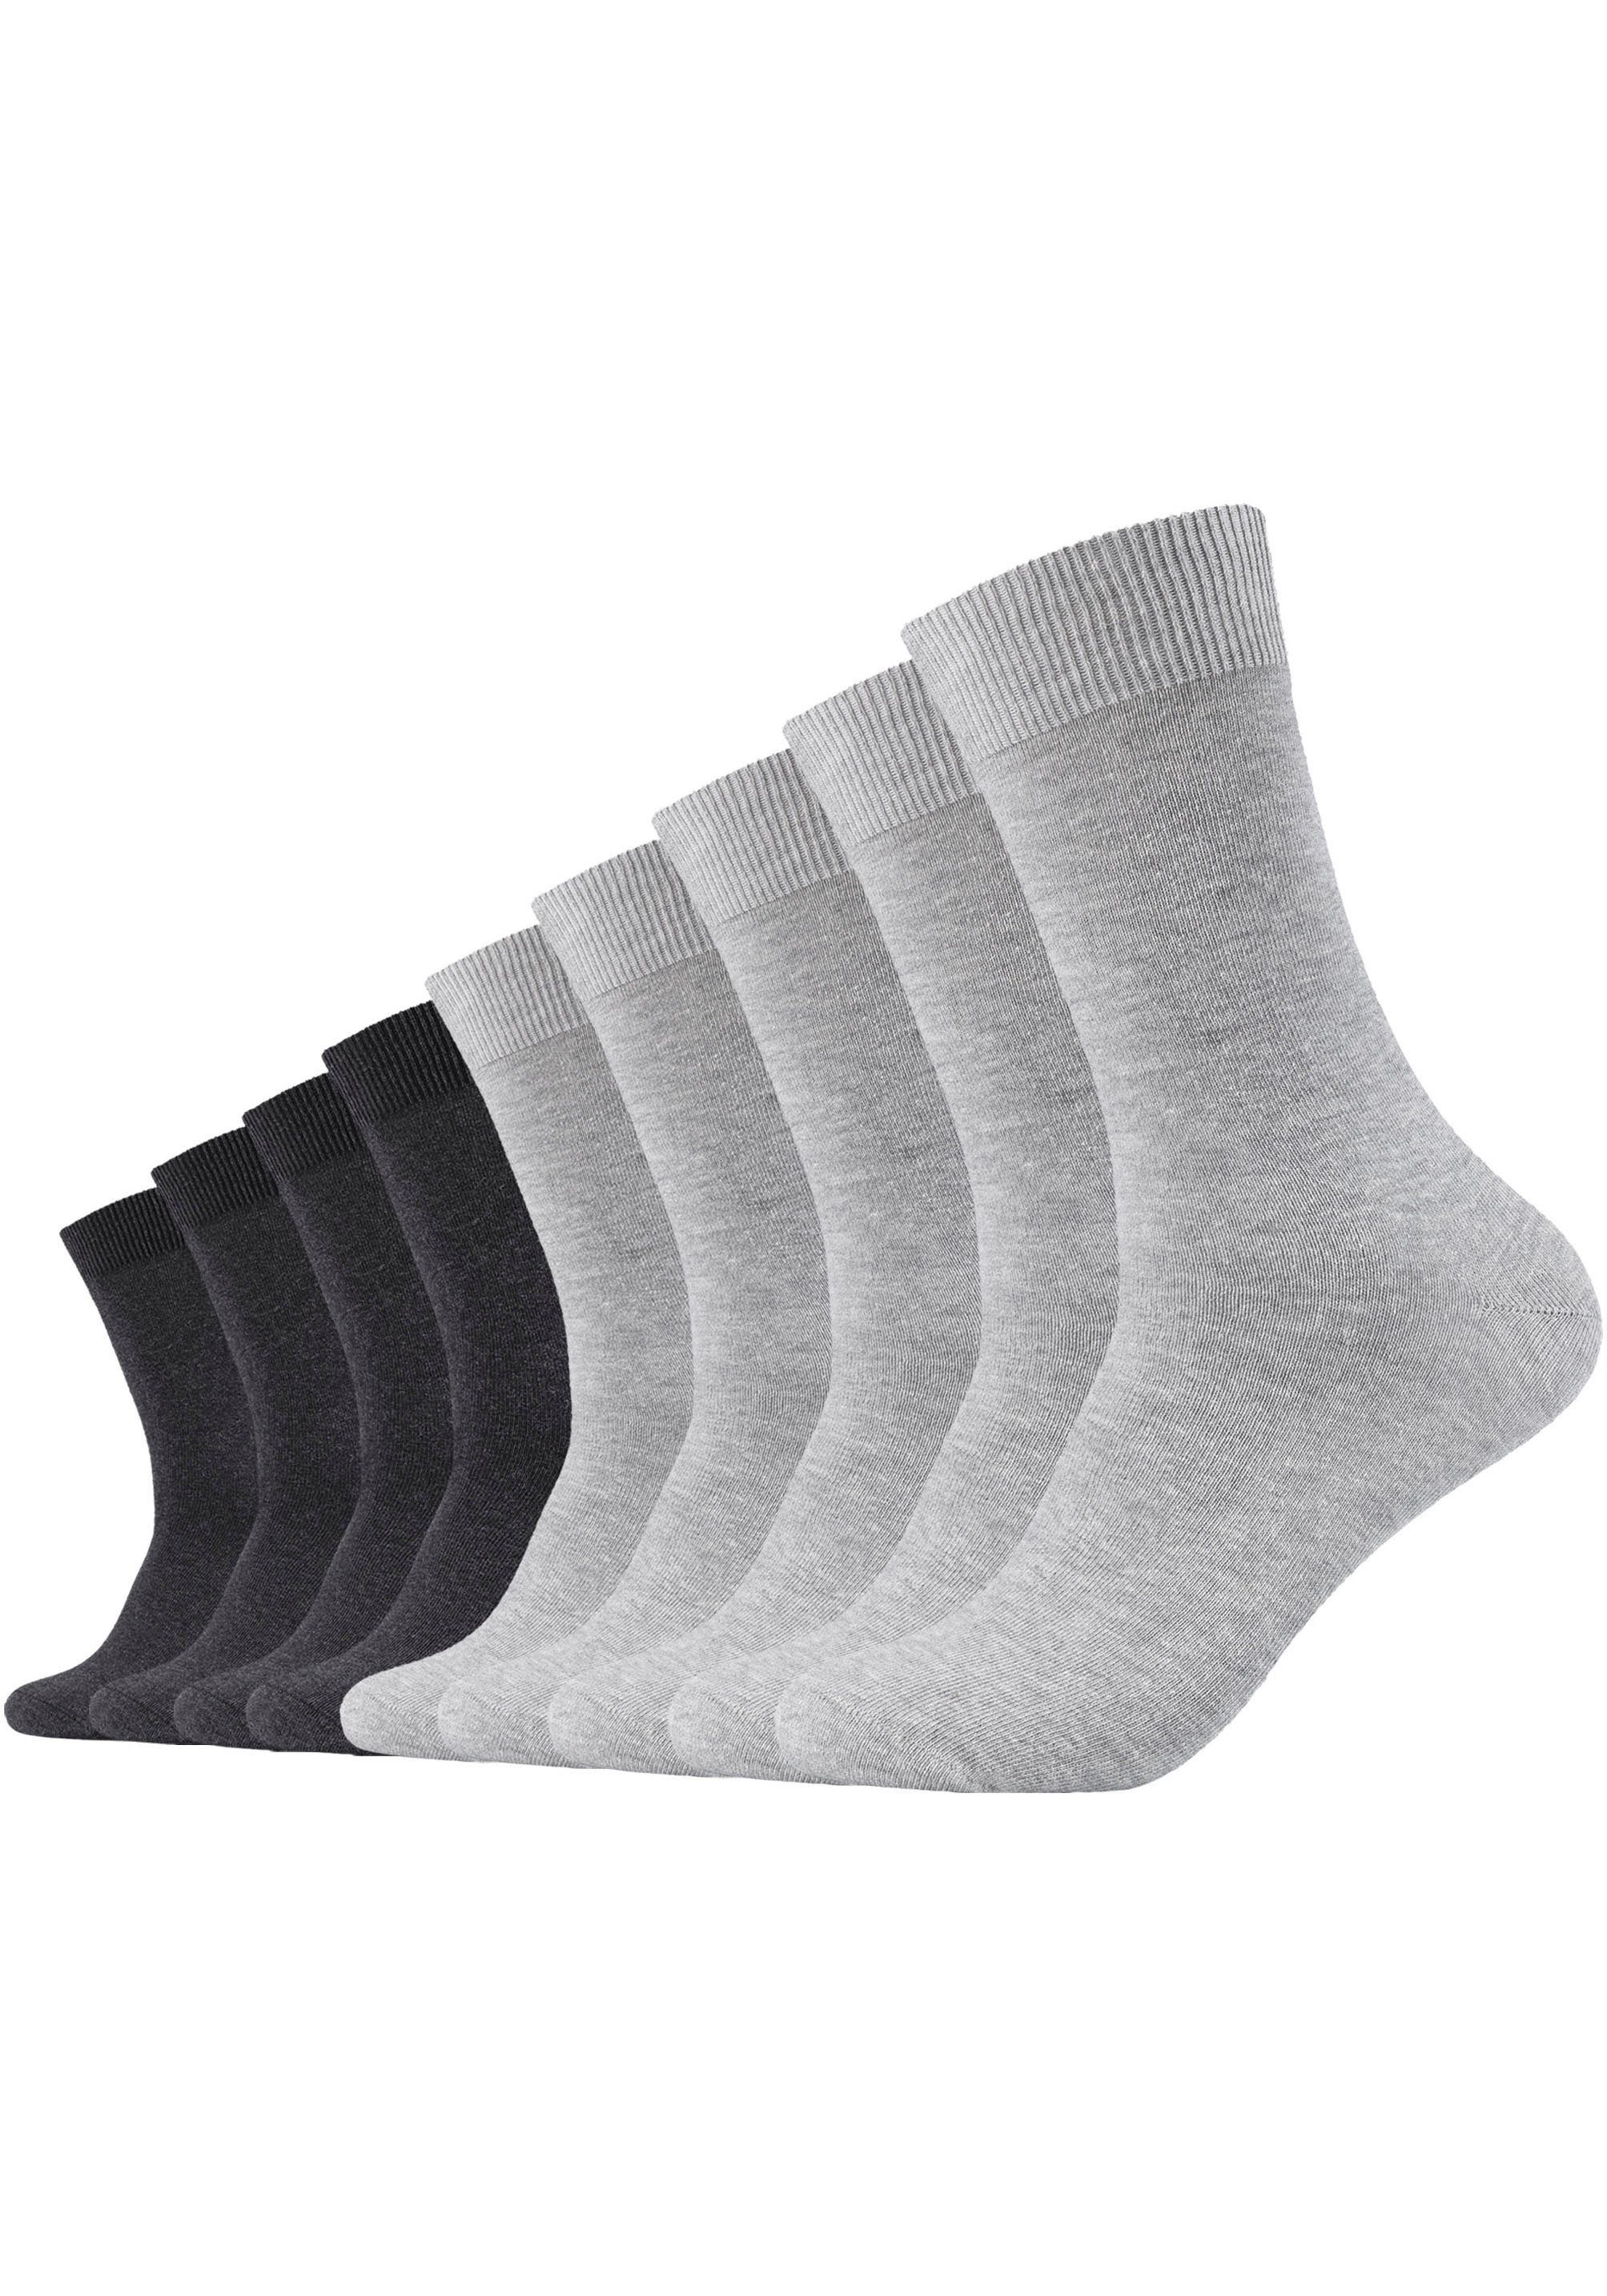 Langlebig: (Packung, Camano hellgrau-grau-meliert Socken Fersen- 9-Paar) Zehenbereich verstärkter und